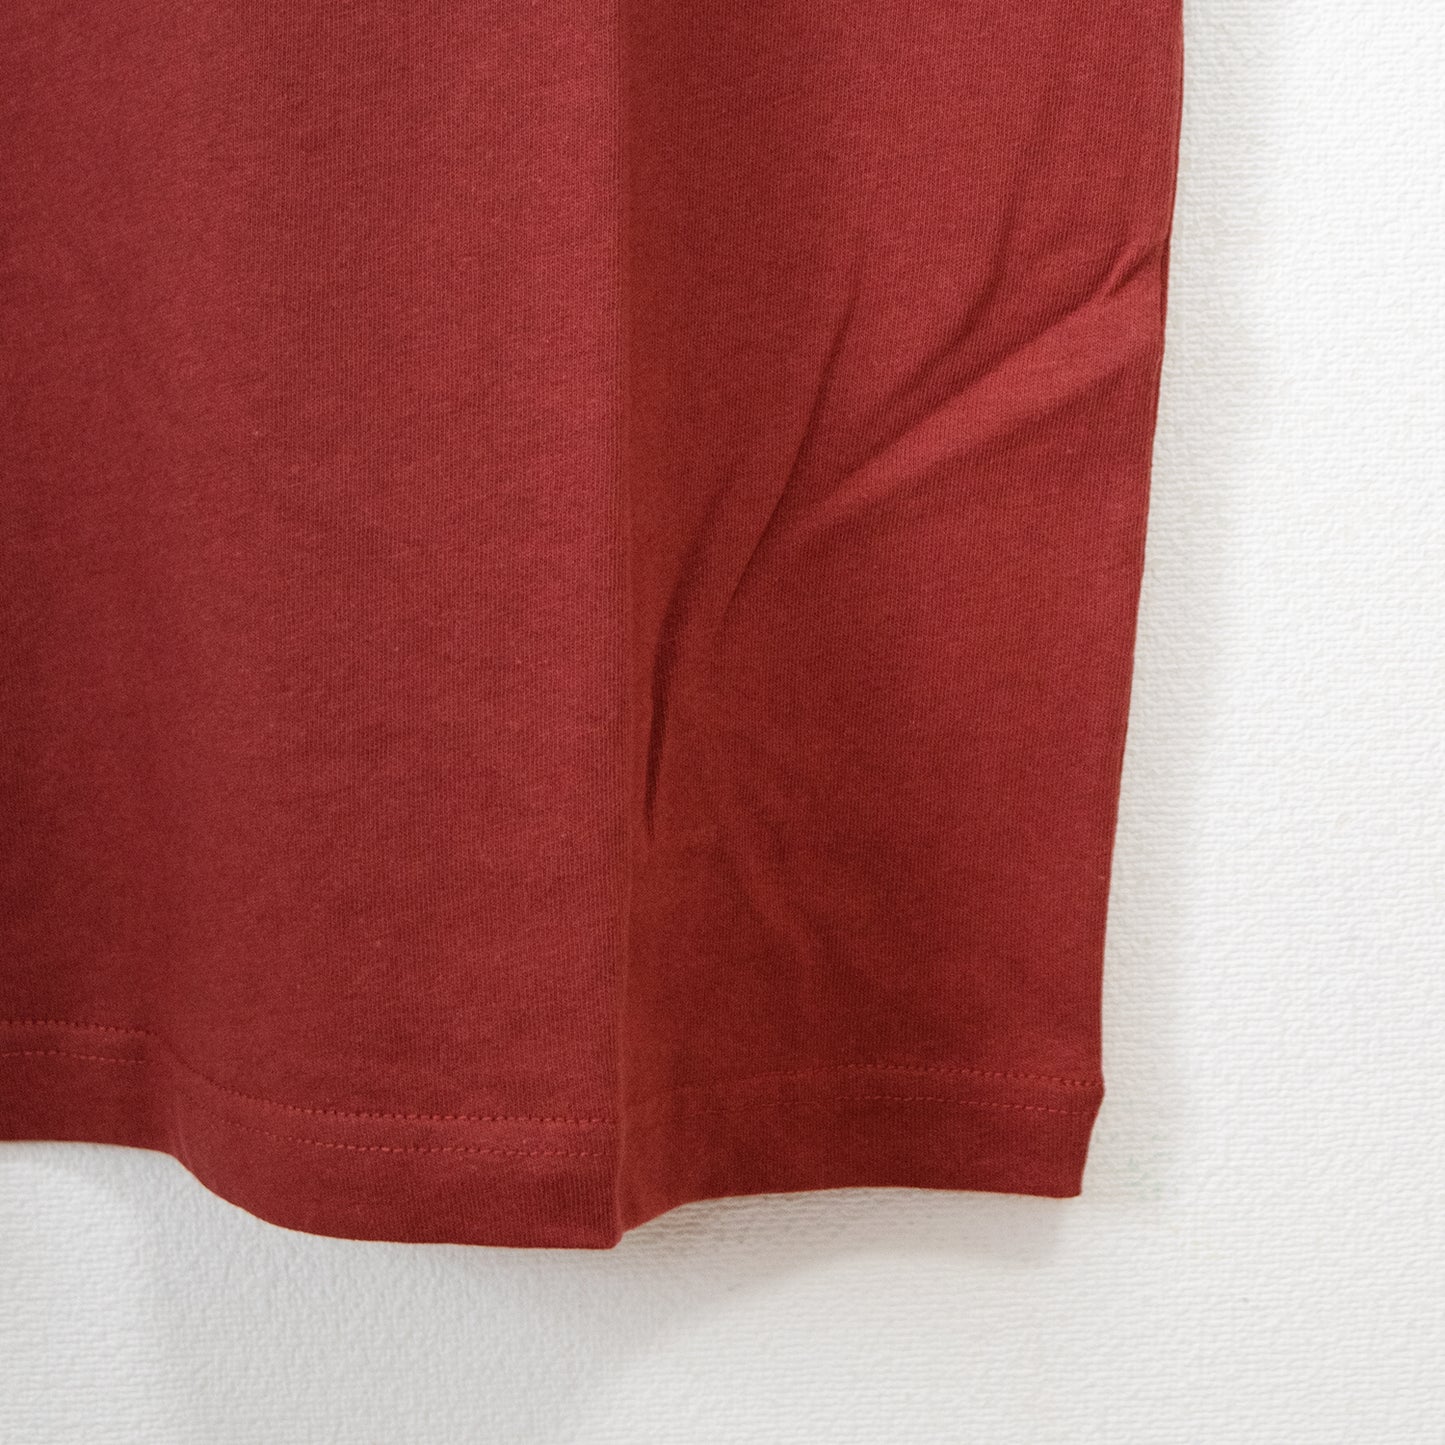 Nameneko Oversized Silhouette Photo Short Sleeve T-Shirt Wine Red